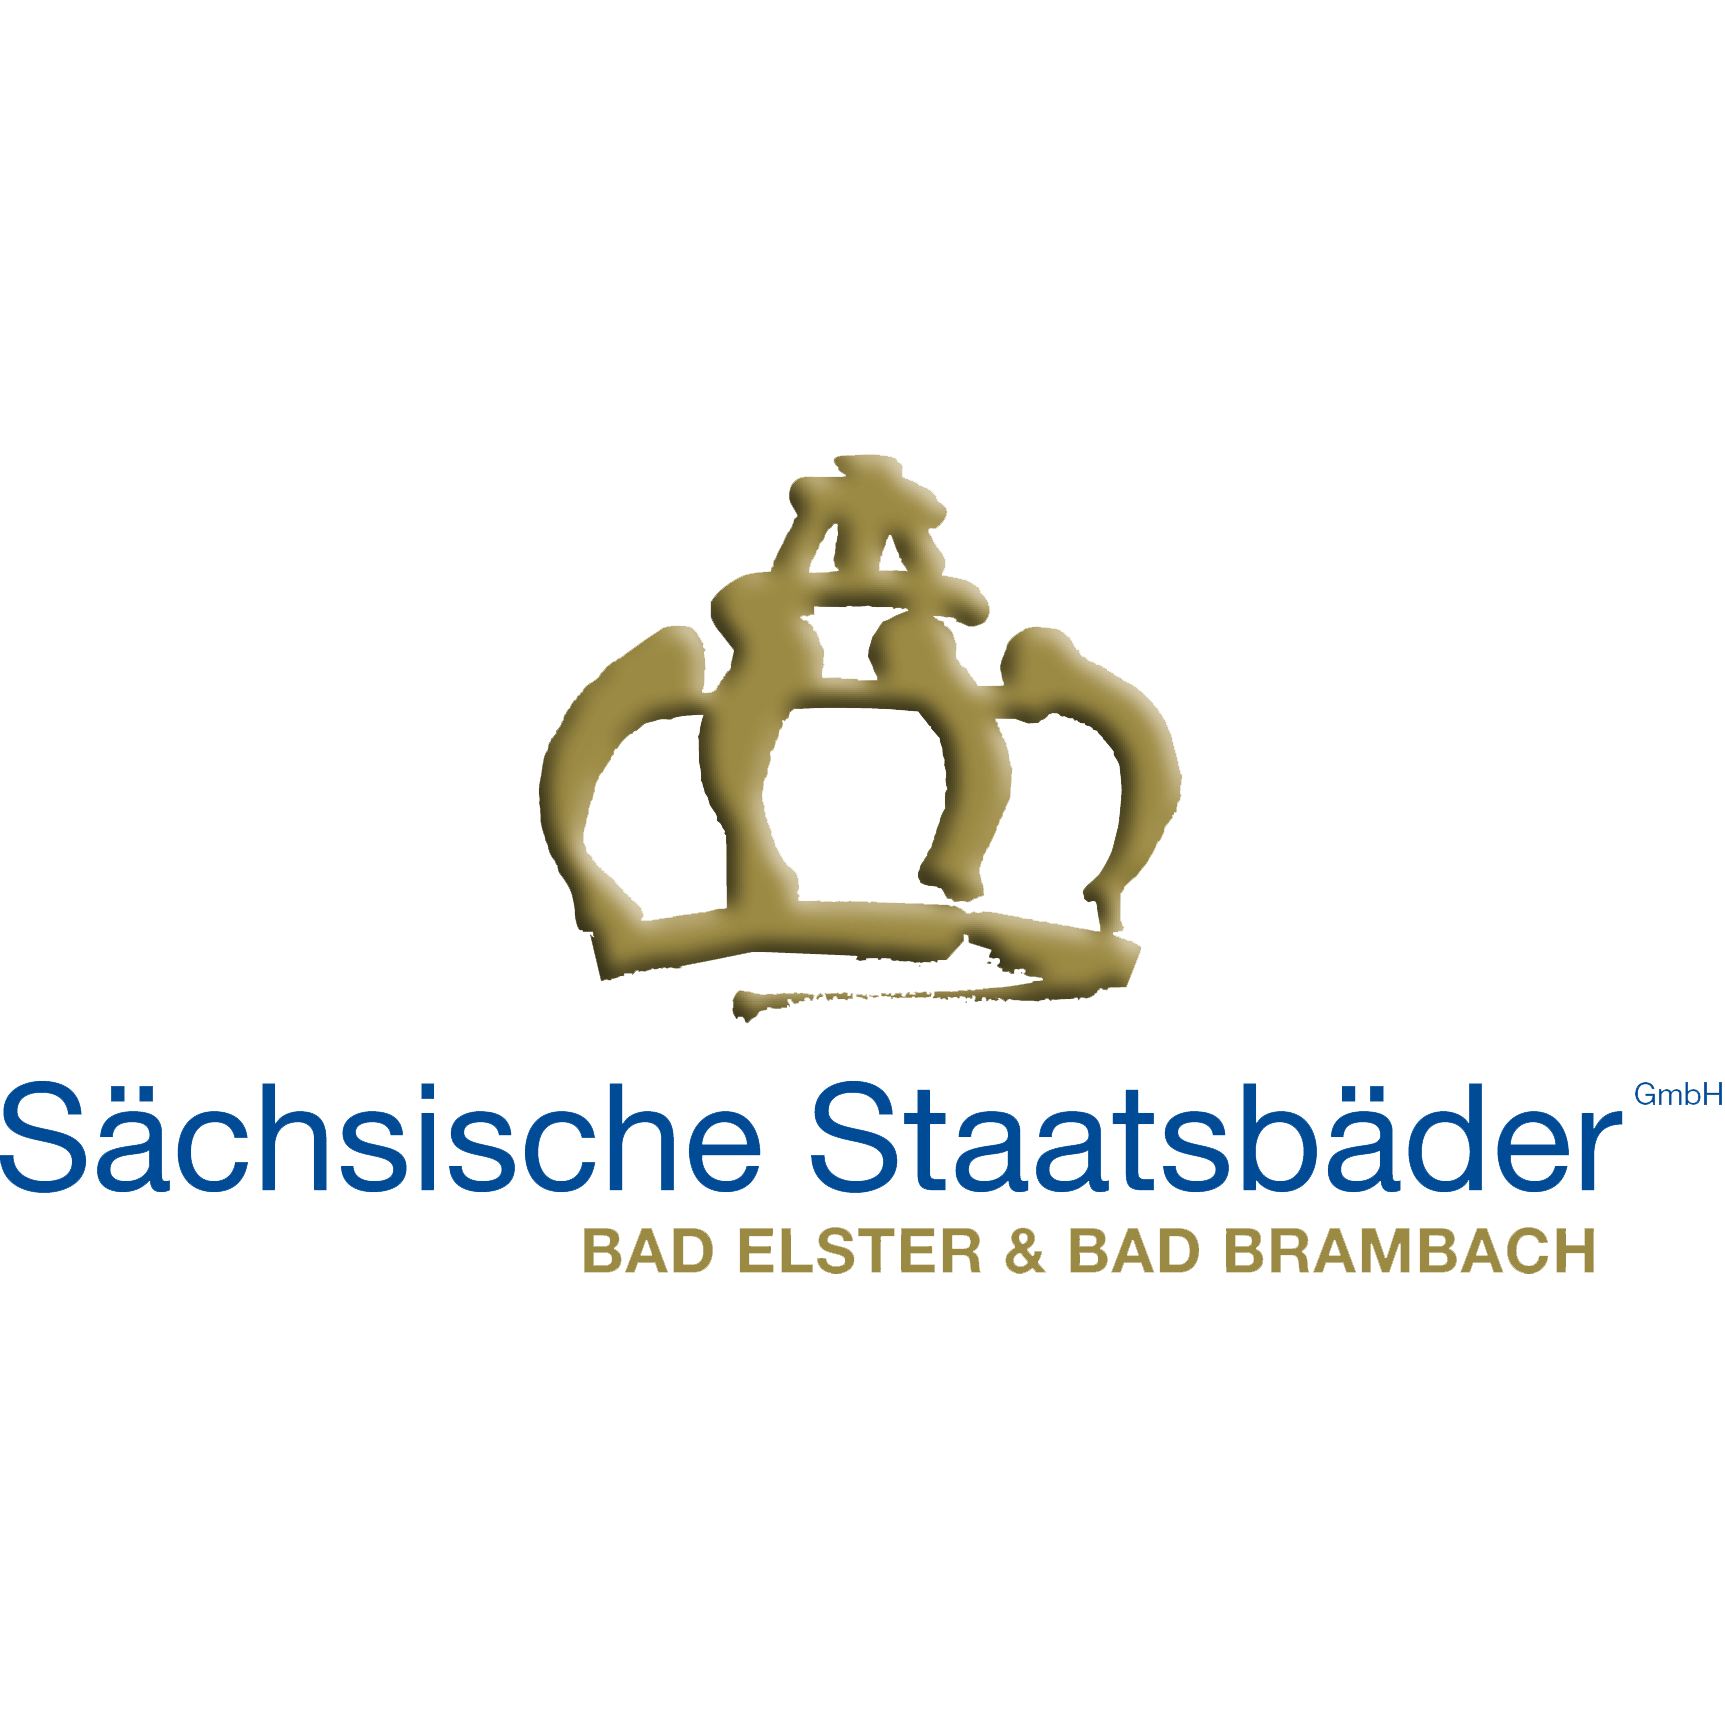 Logo Sächsische Staatsbäder GmbH